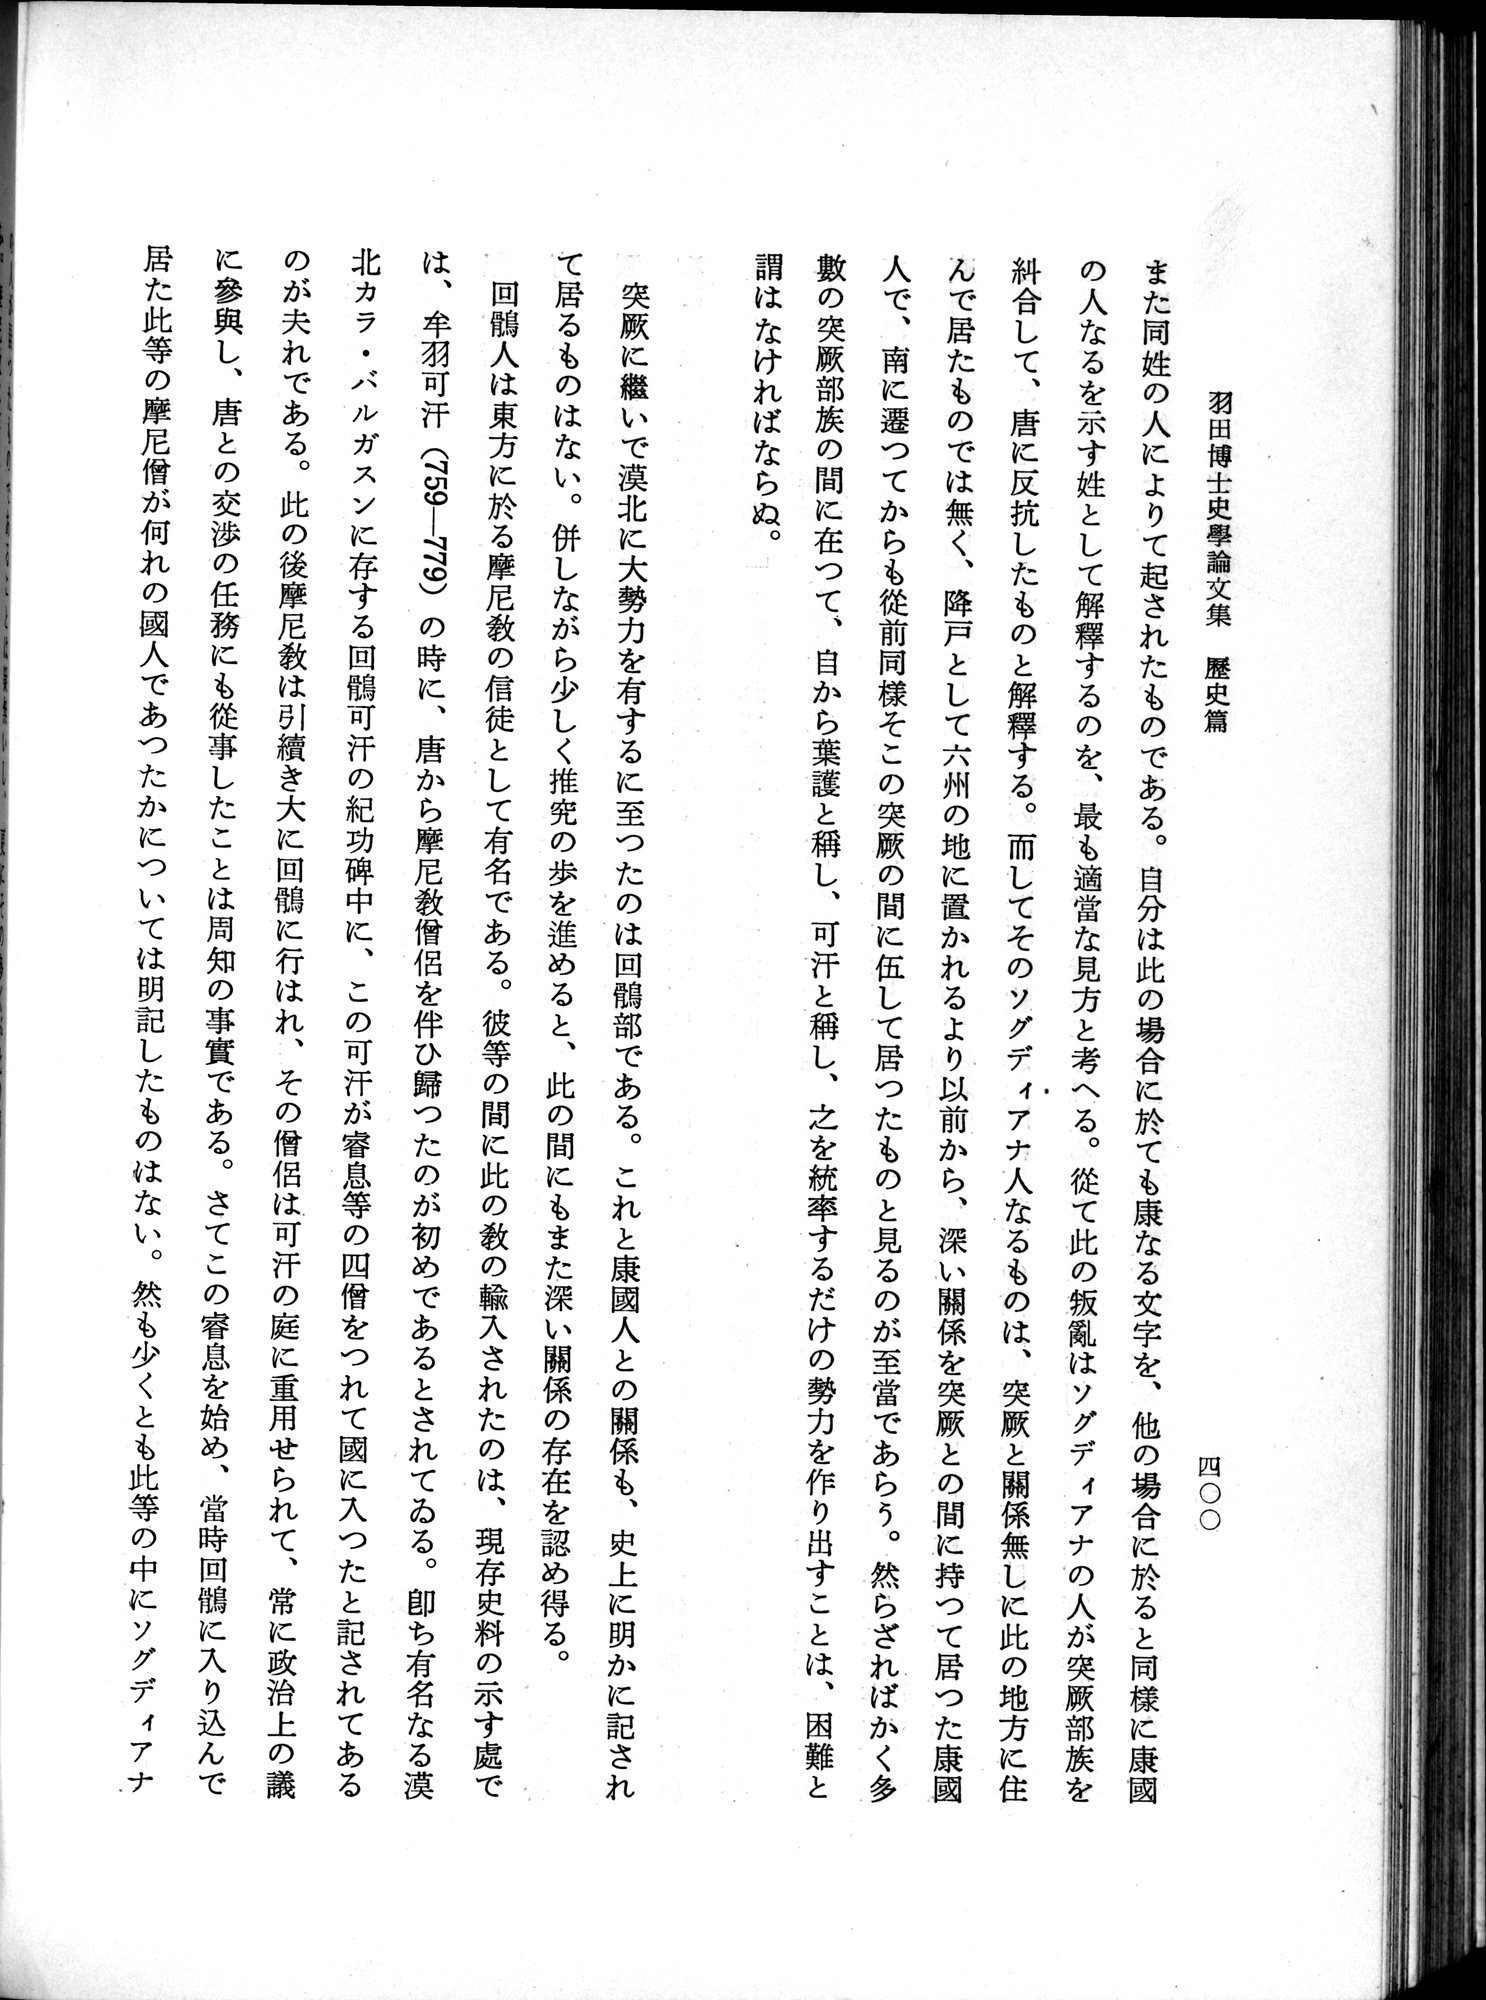 羽田博士史学論文集 : vol.1 / Page 438 (Grayscale High Resolution Image)